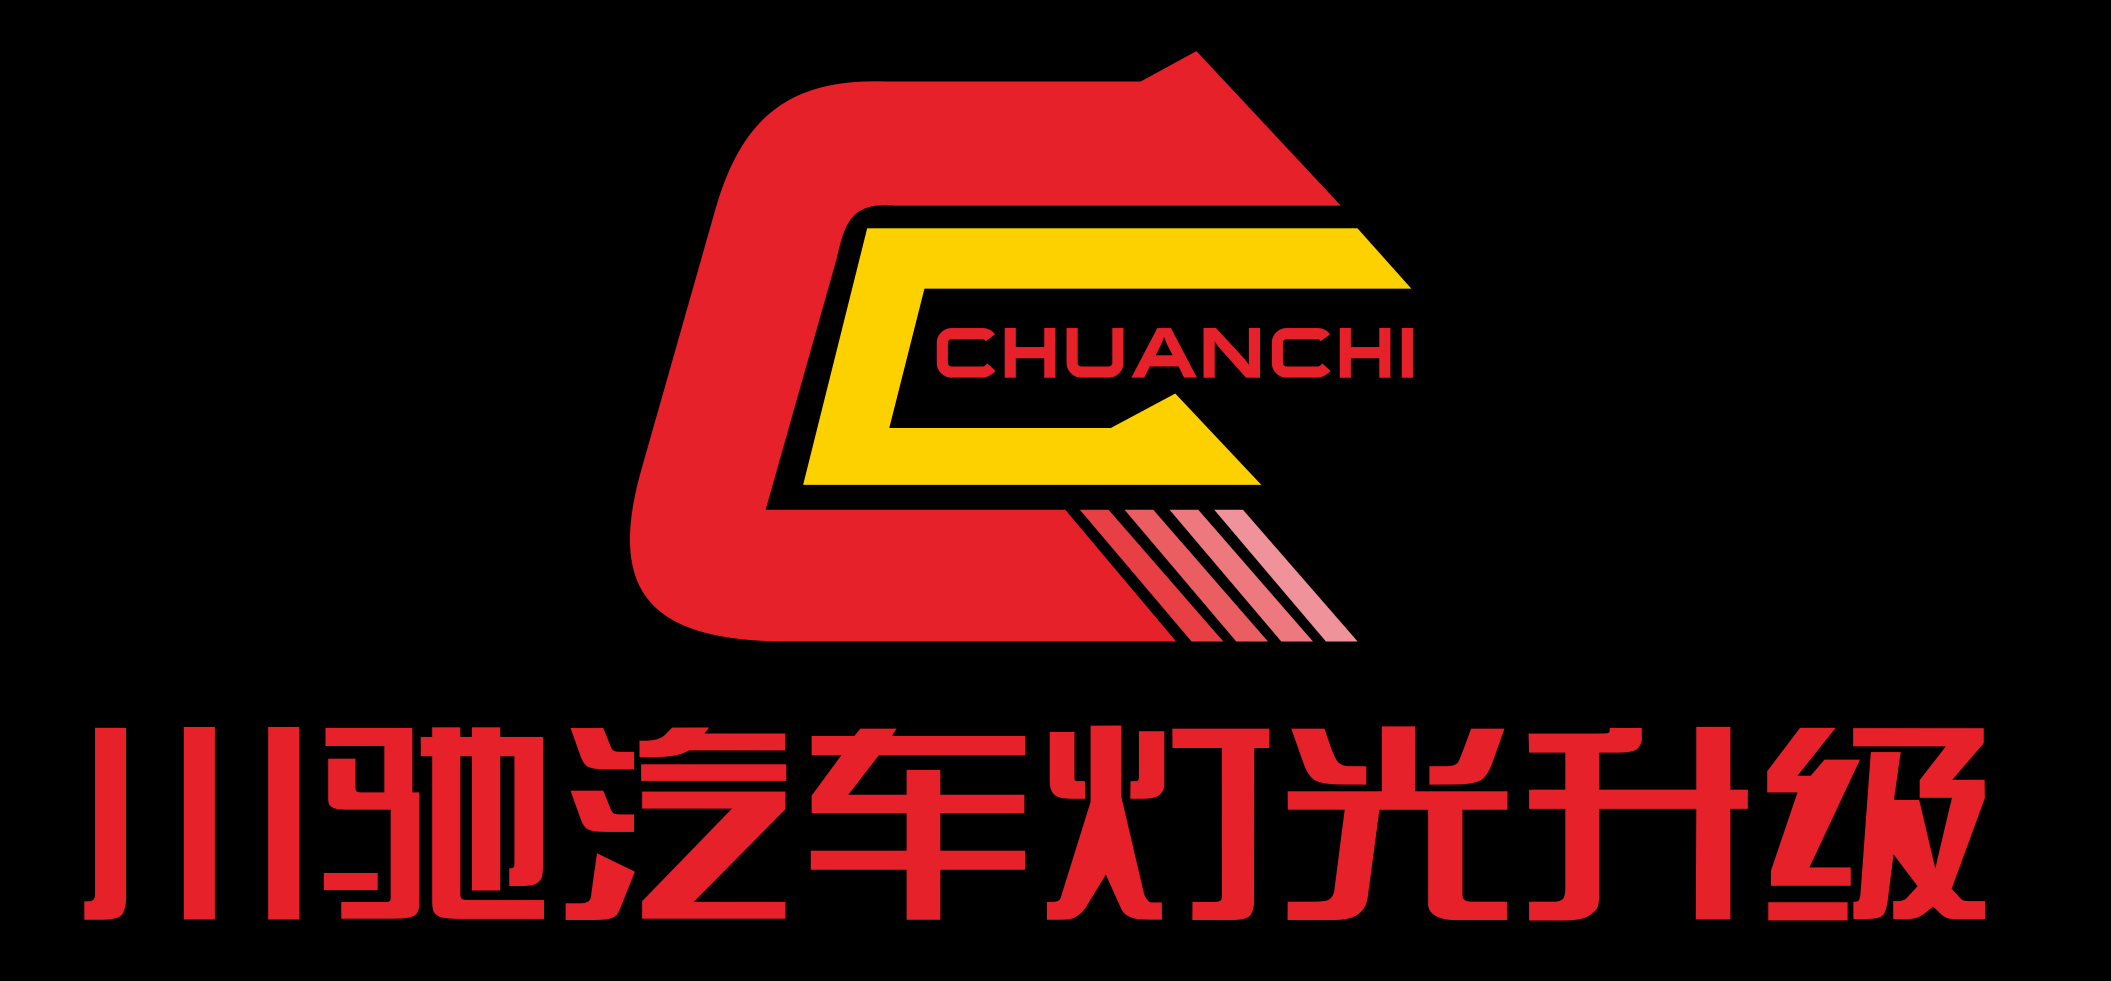 成都川驰车灯 Logo